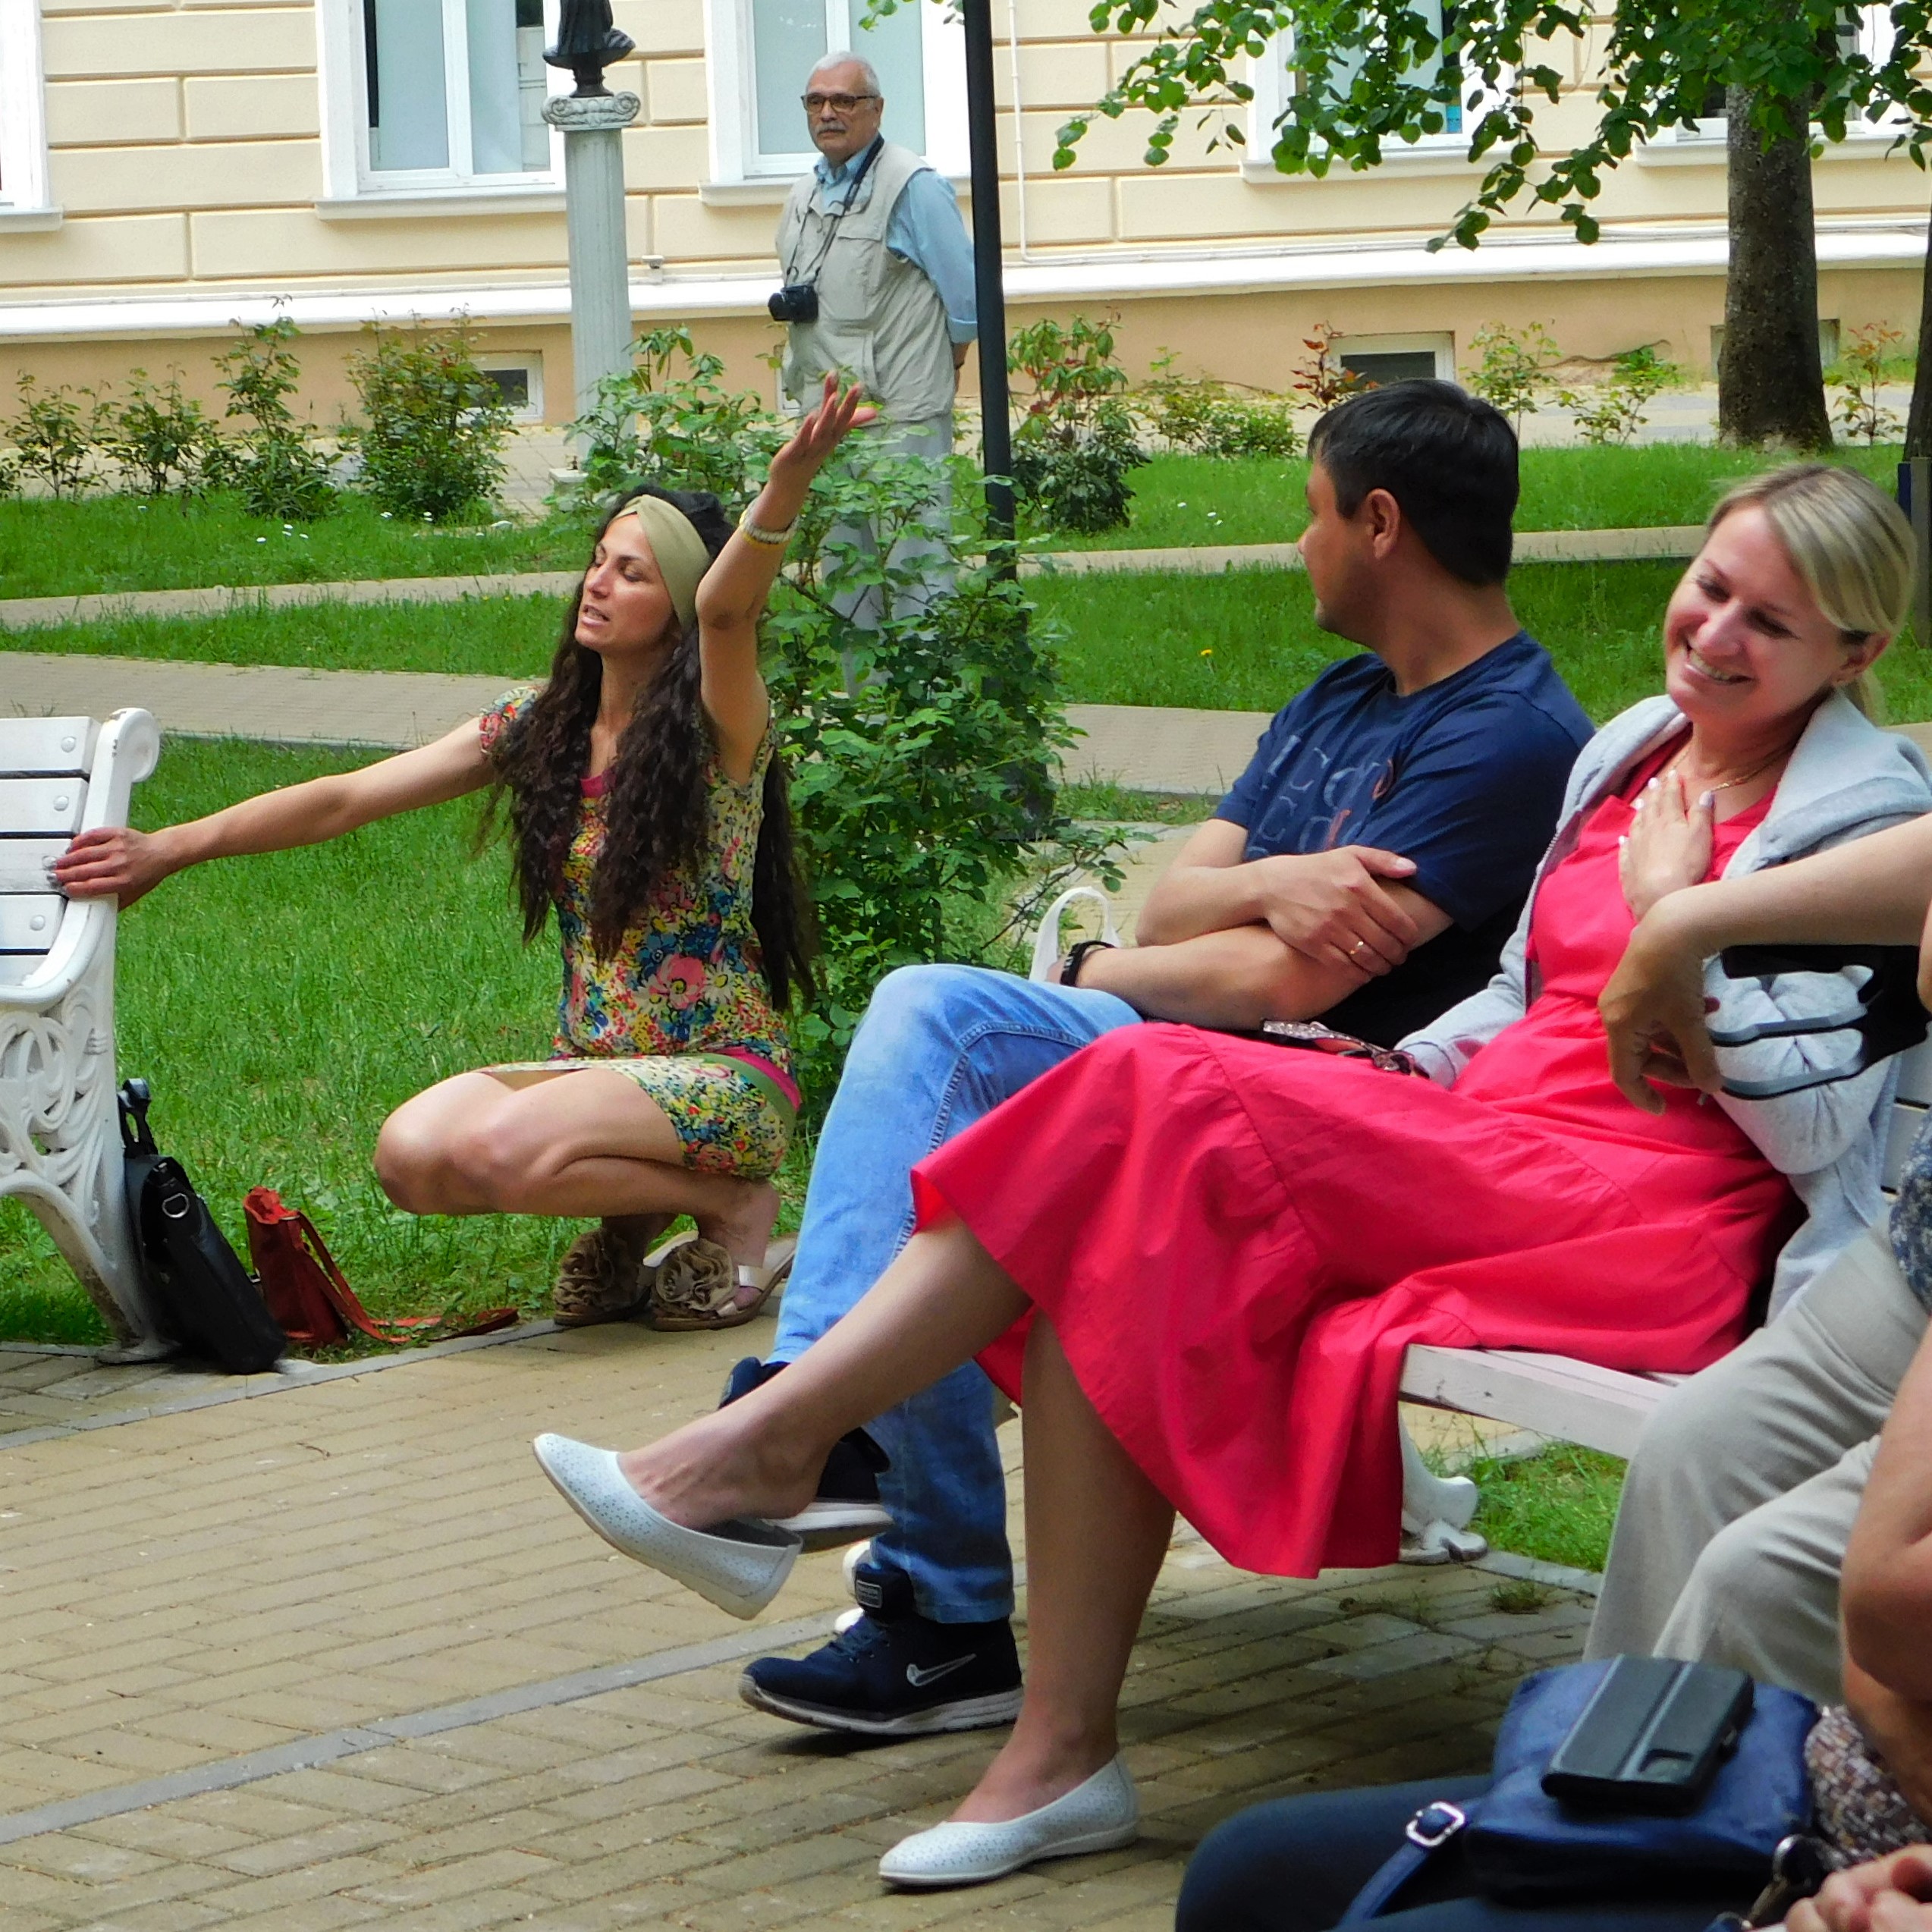 День славянской письменности и культуры в сквере королевы Луизы собрал более ста зрителей